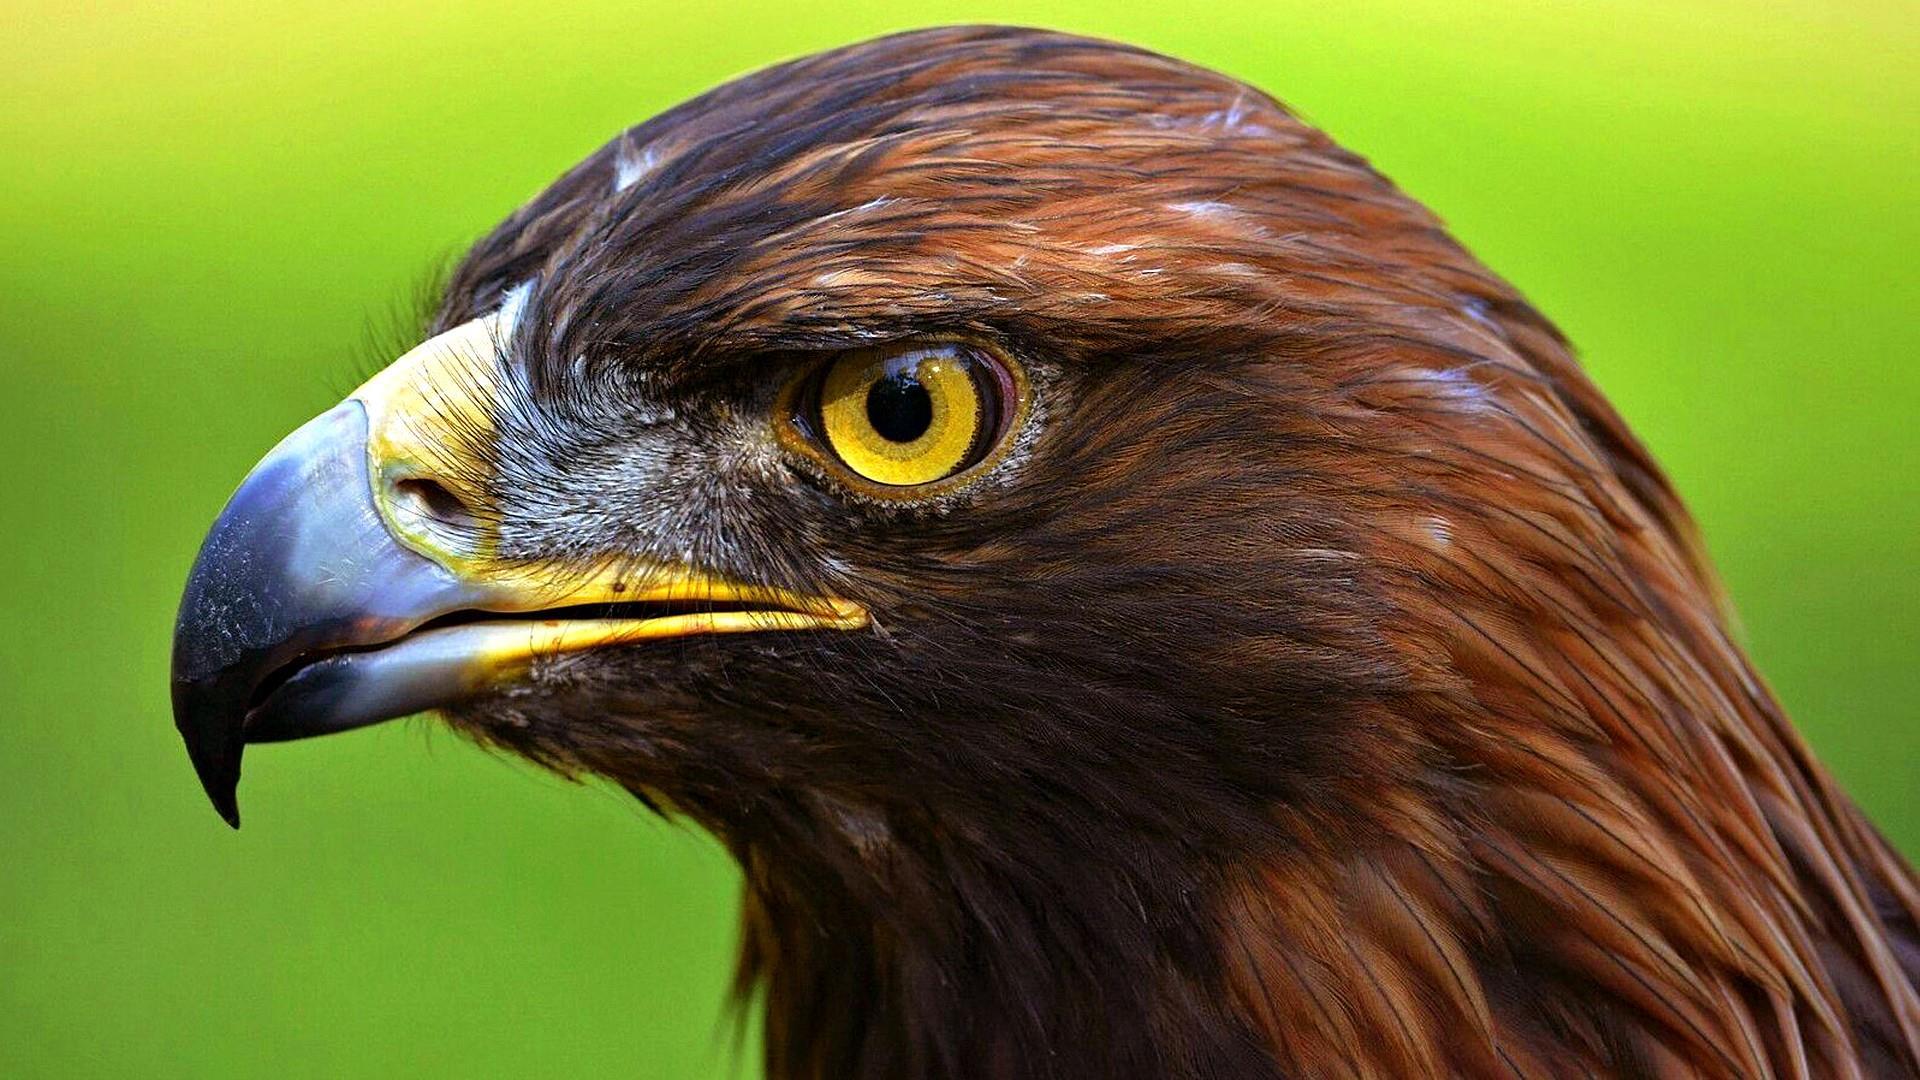 the eagle eye